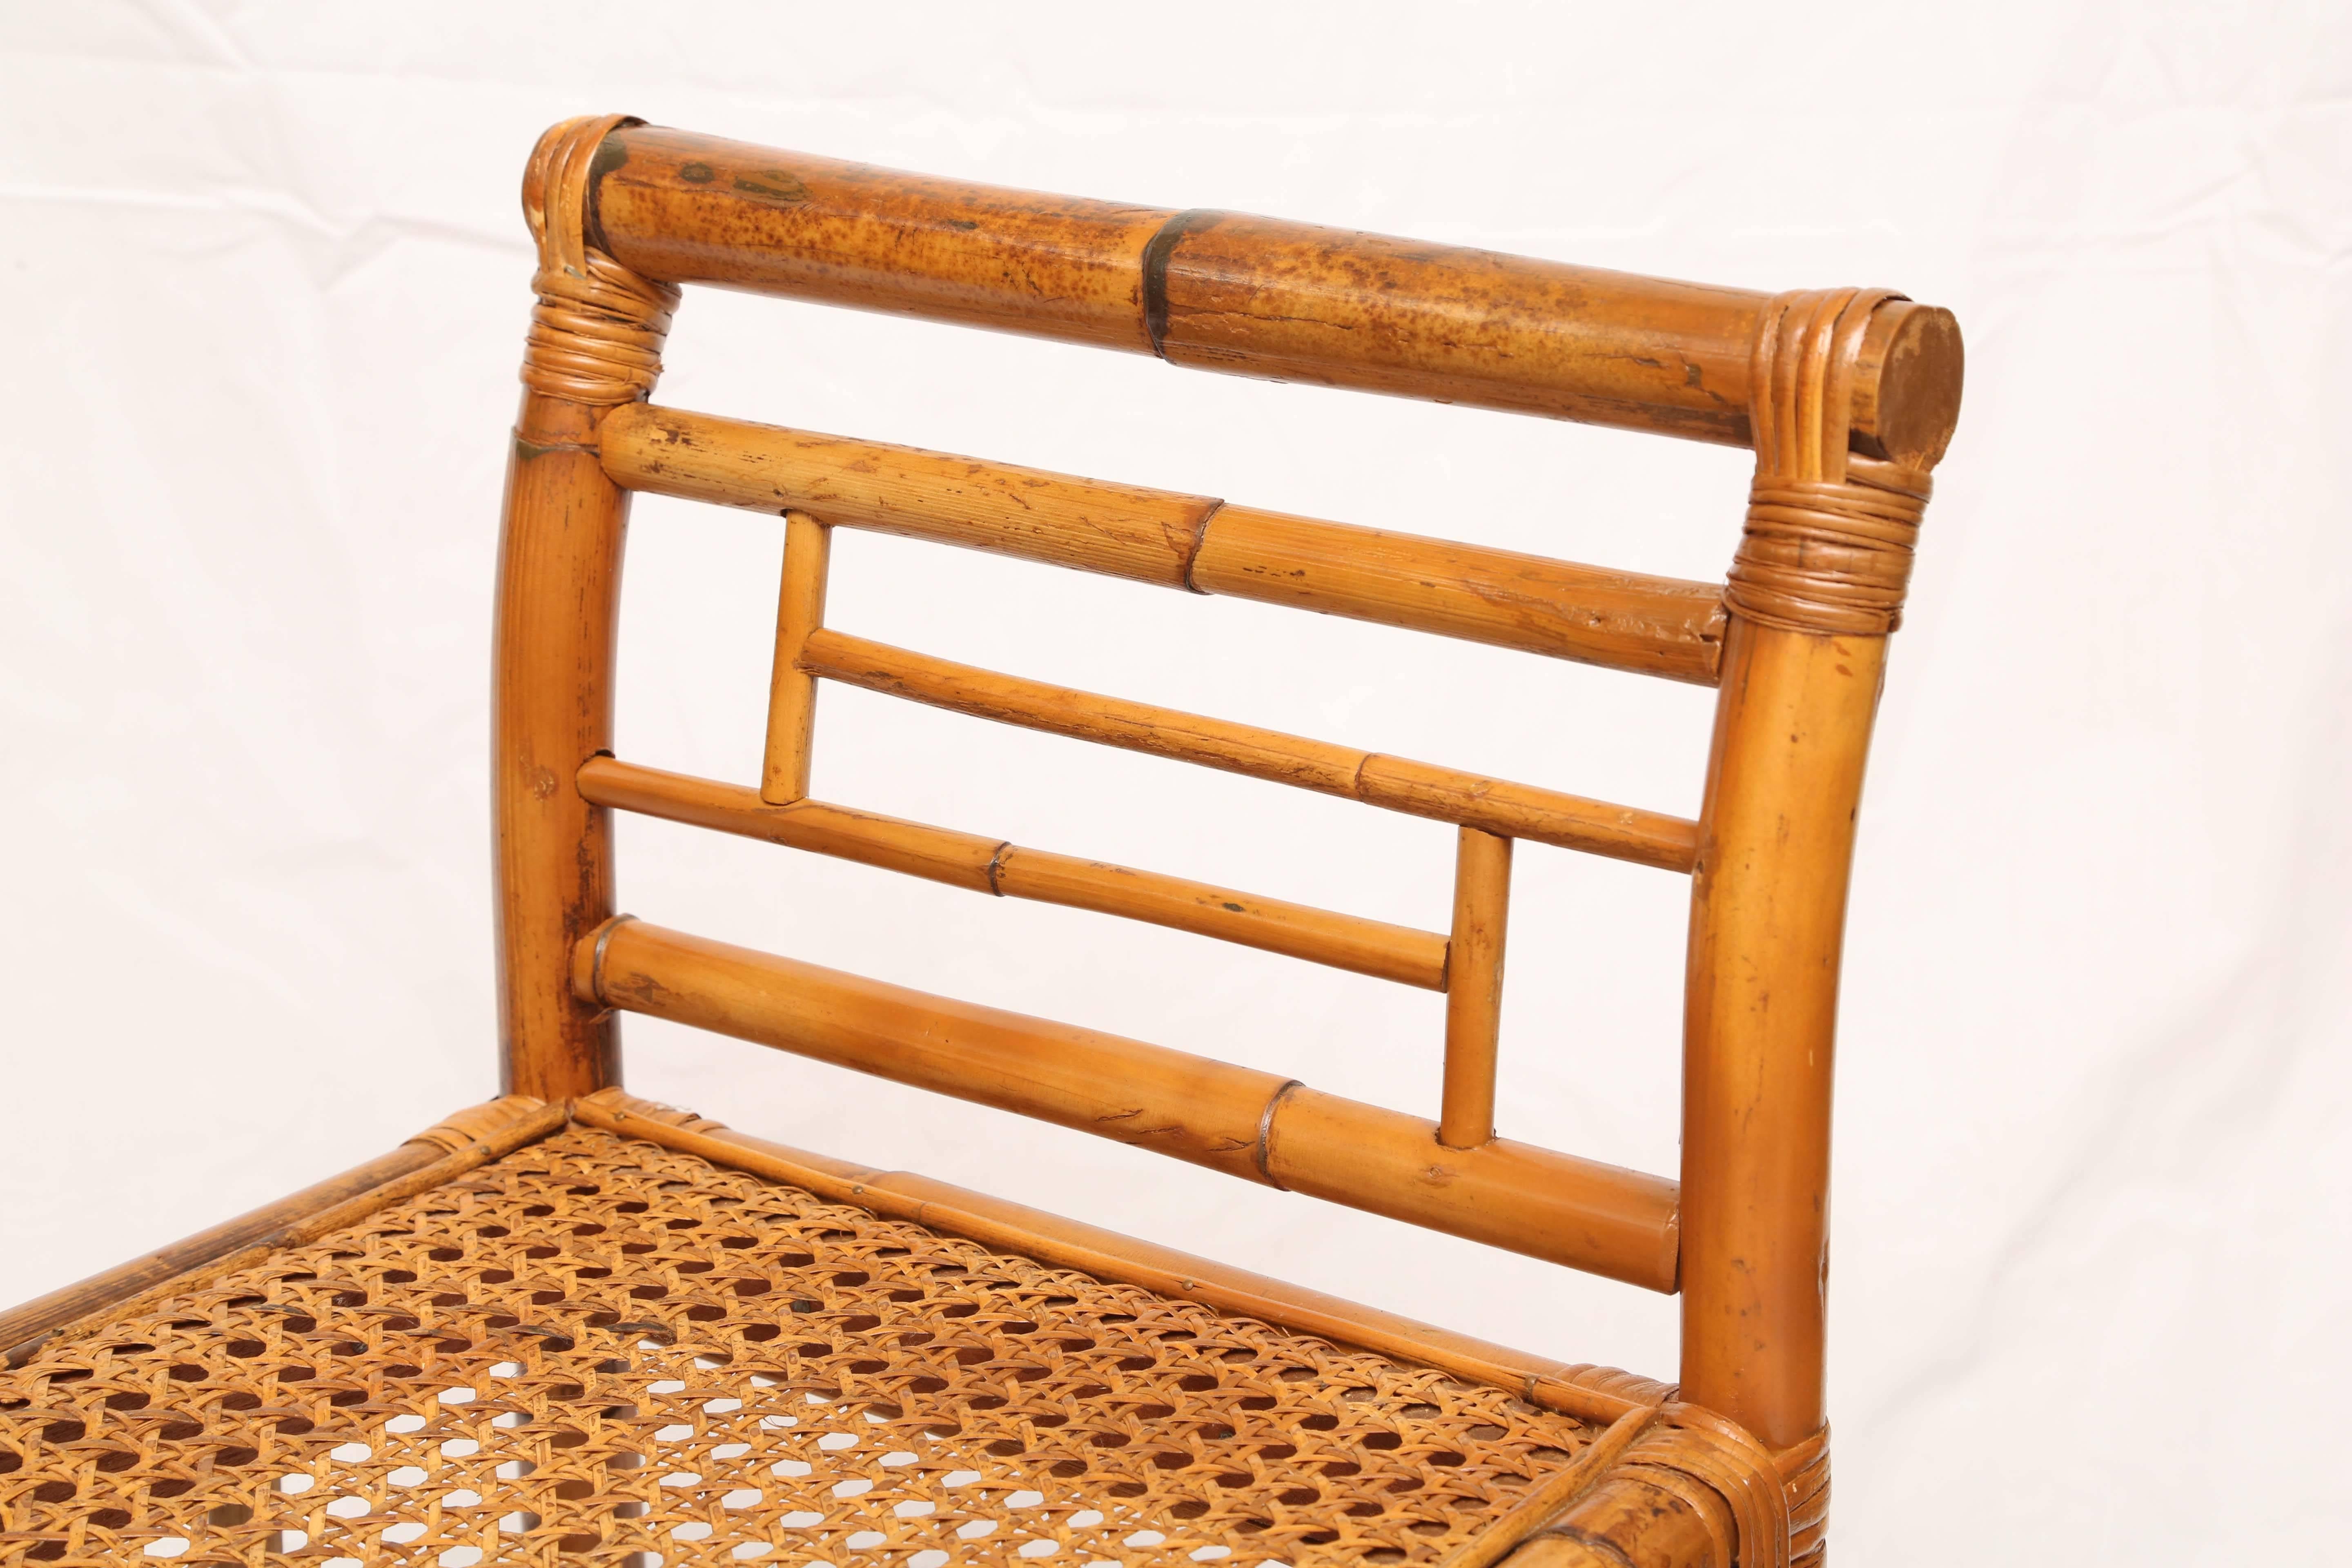 cane seat bench